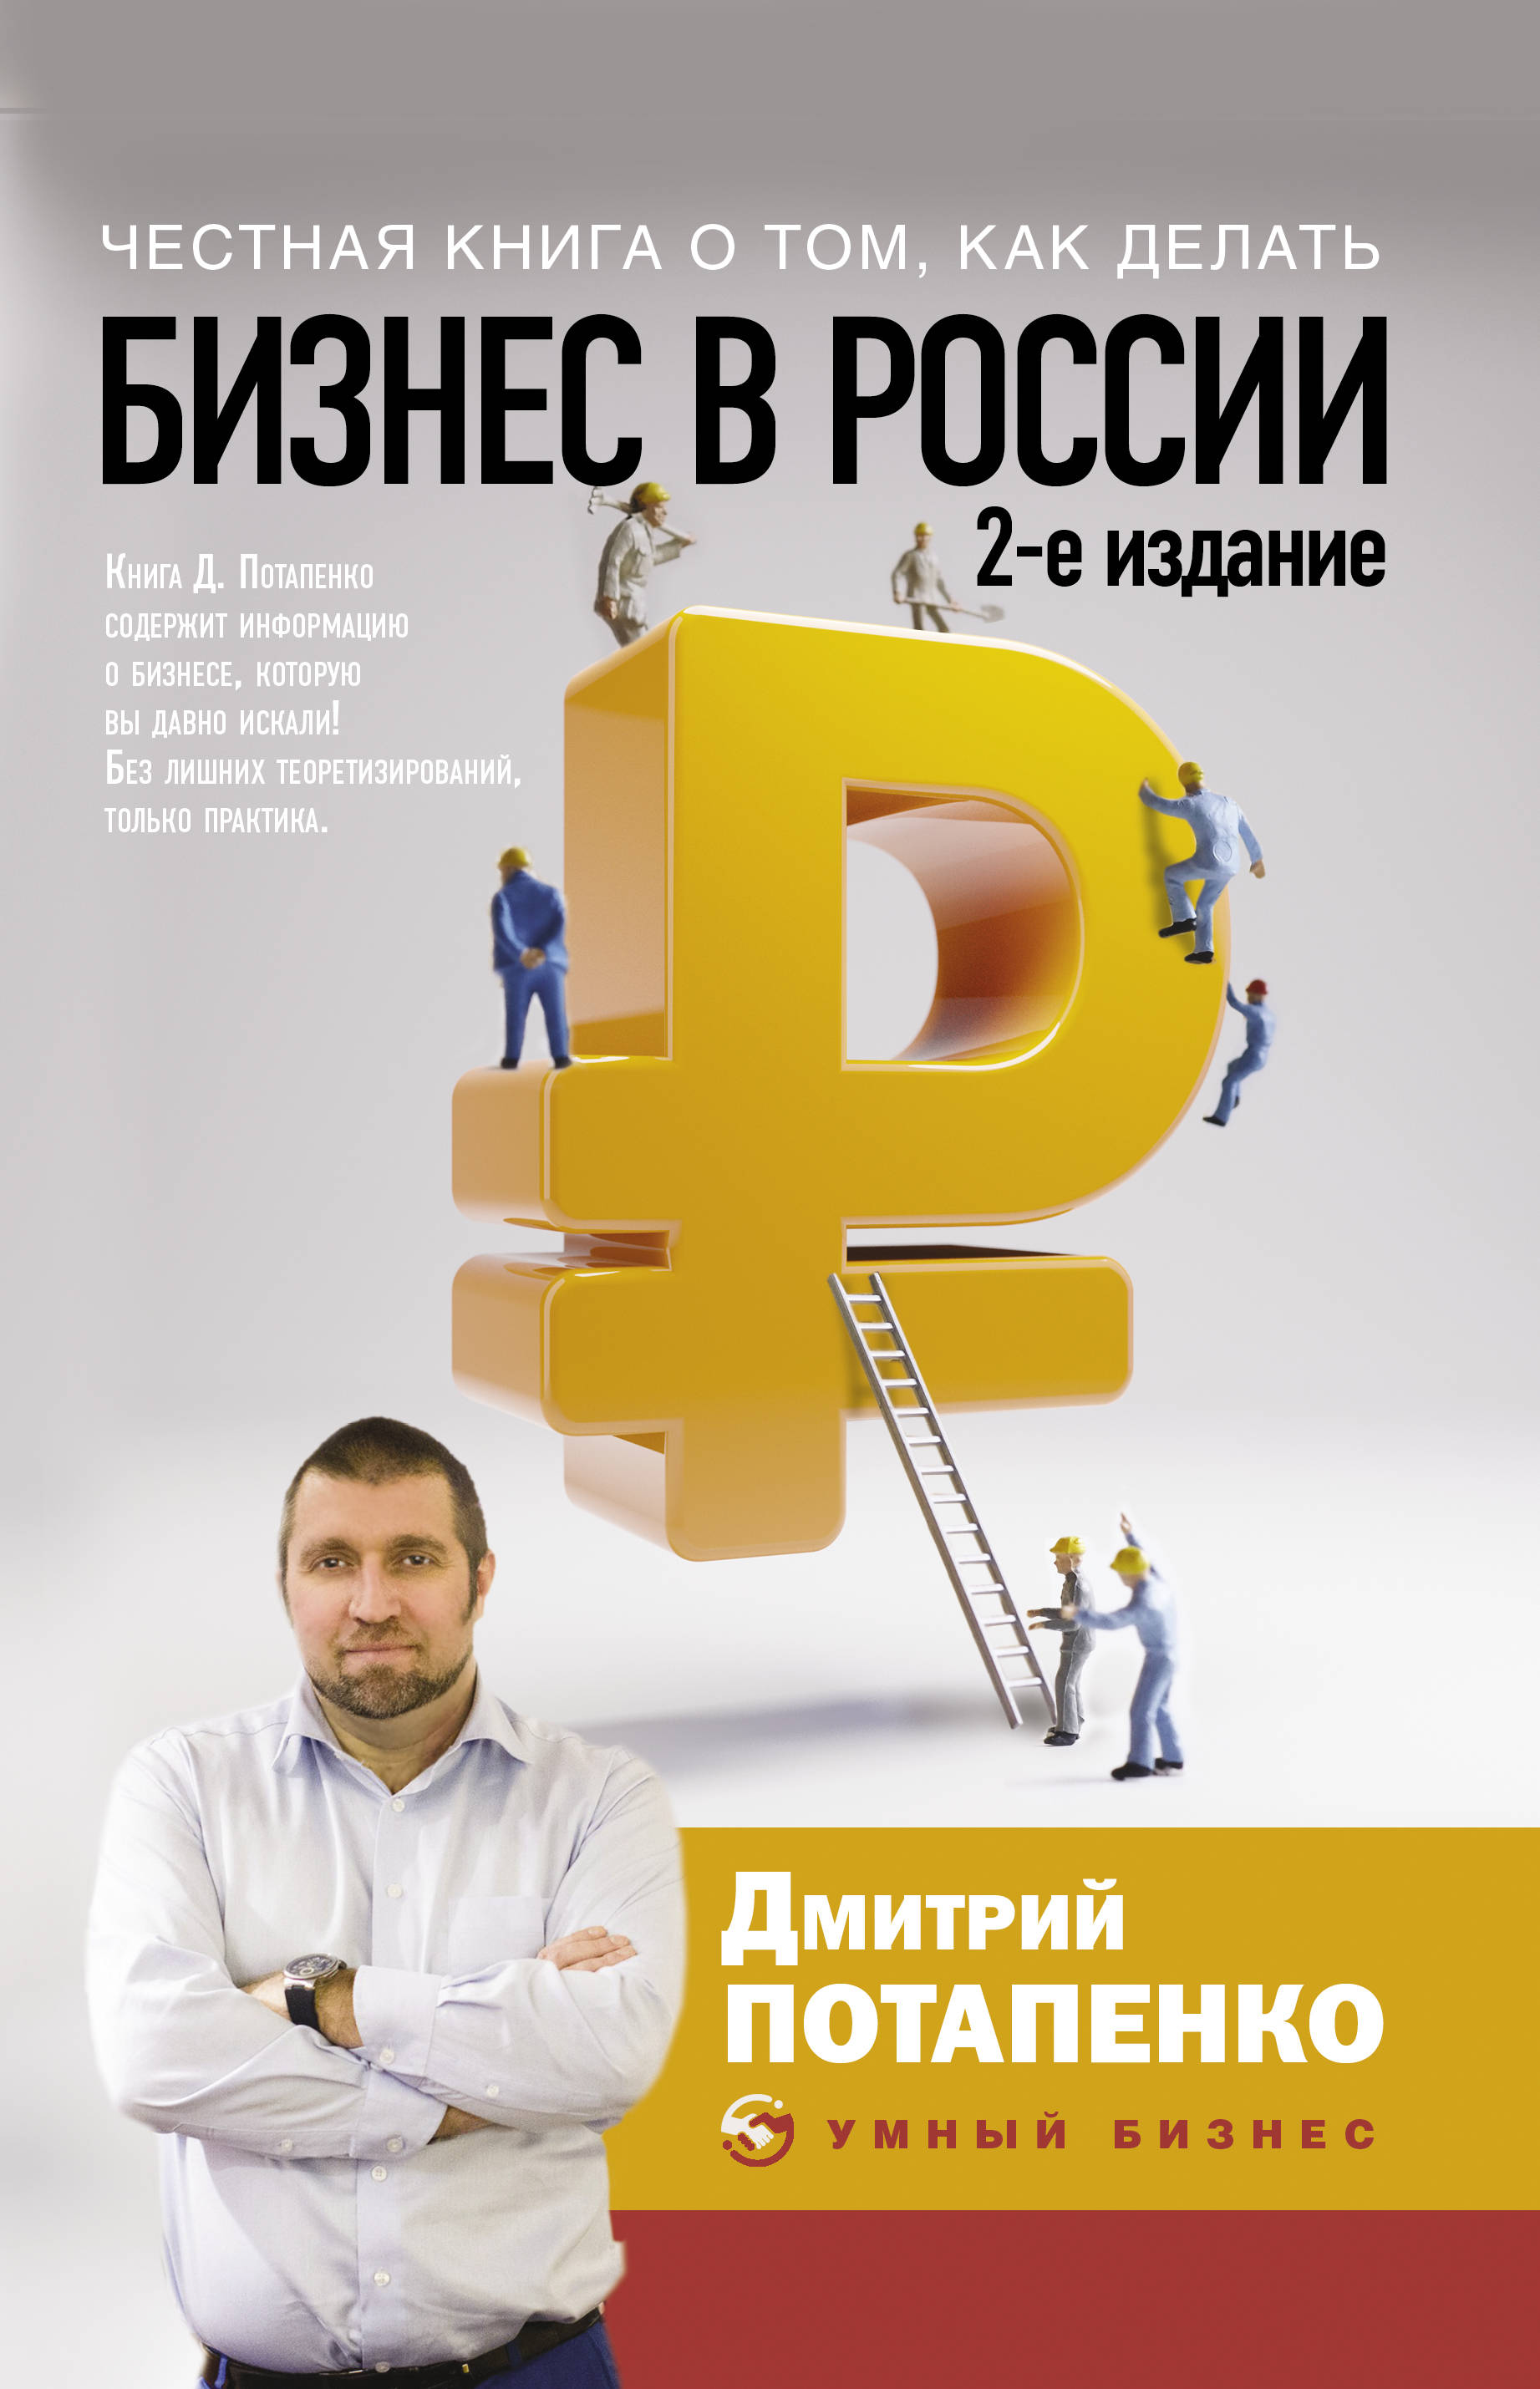 Мобильные бизнес книги. Бизнес книги. Обложка бизнес книги. Бизнес в России книга Потапенко.